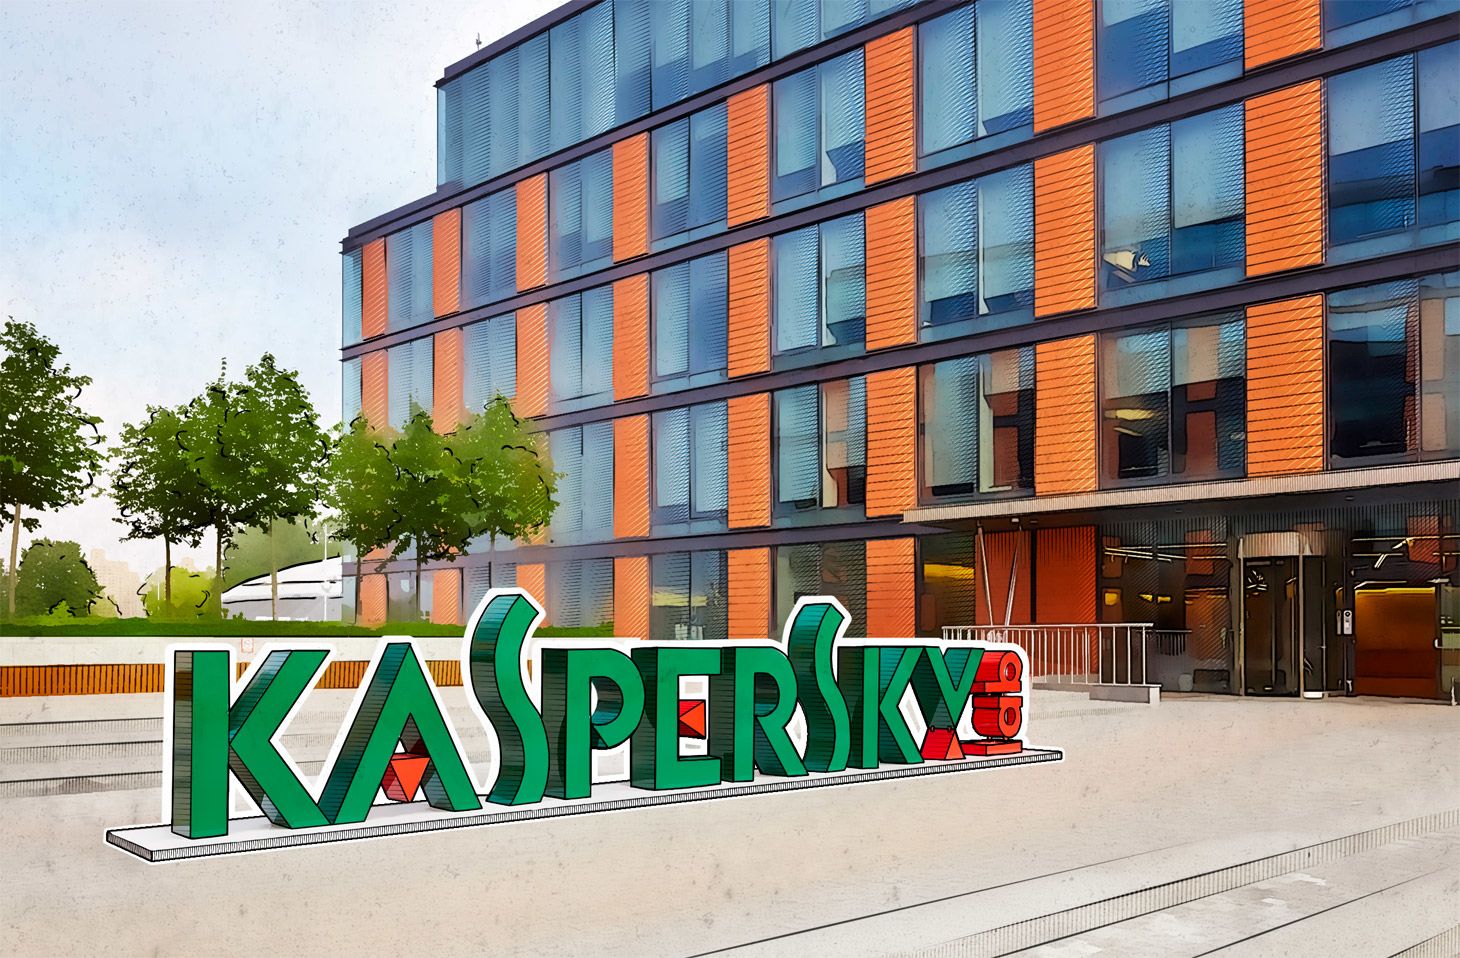 Les acheteurs publics devront-ils faire sans Kaspersky ?